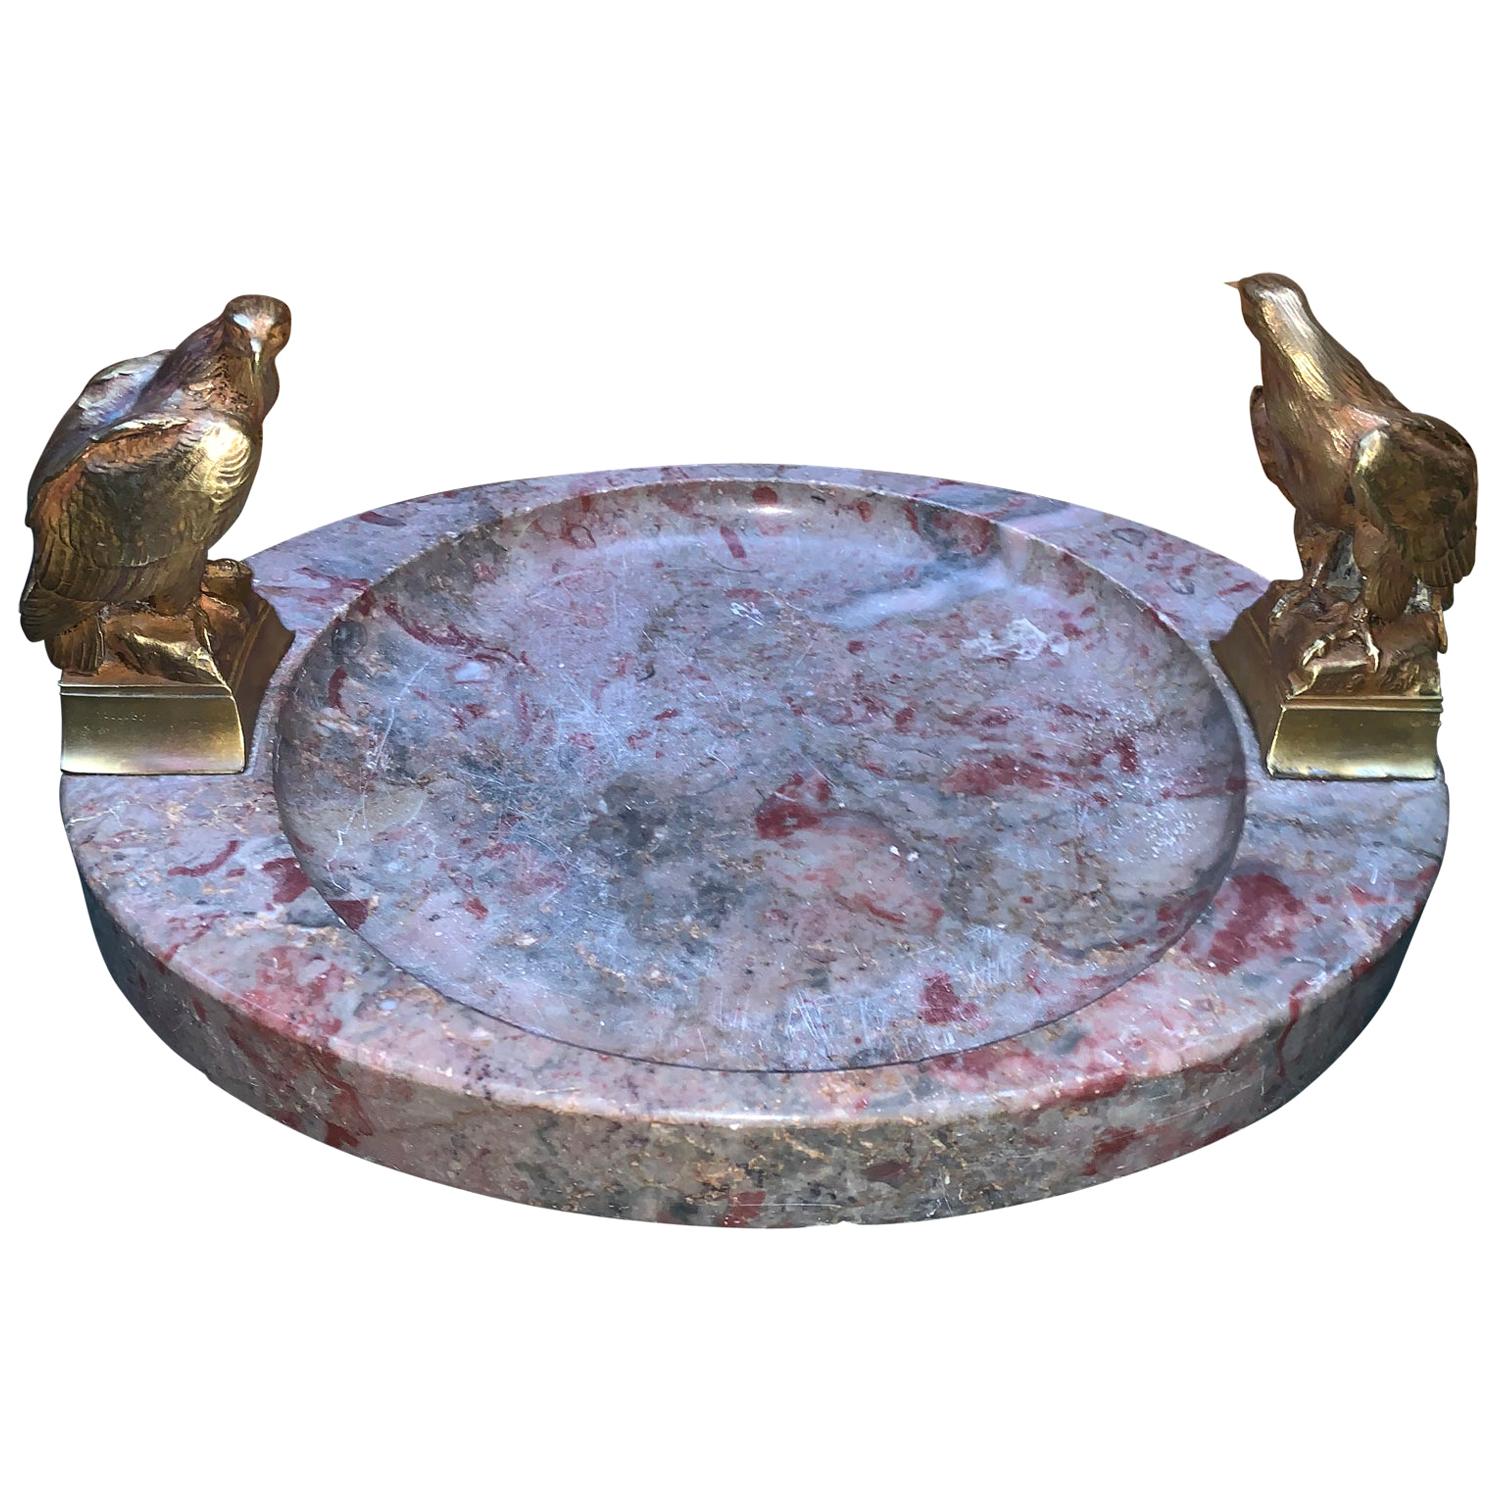 Grand cendrier ou centre de table en marbre ovale signé avec deux aigles en bronze

Signé 